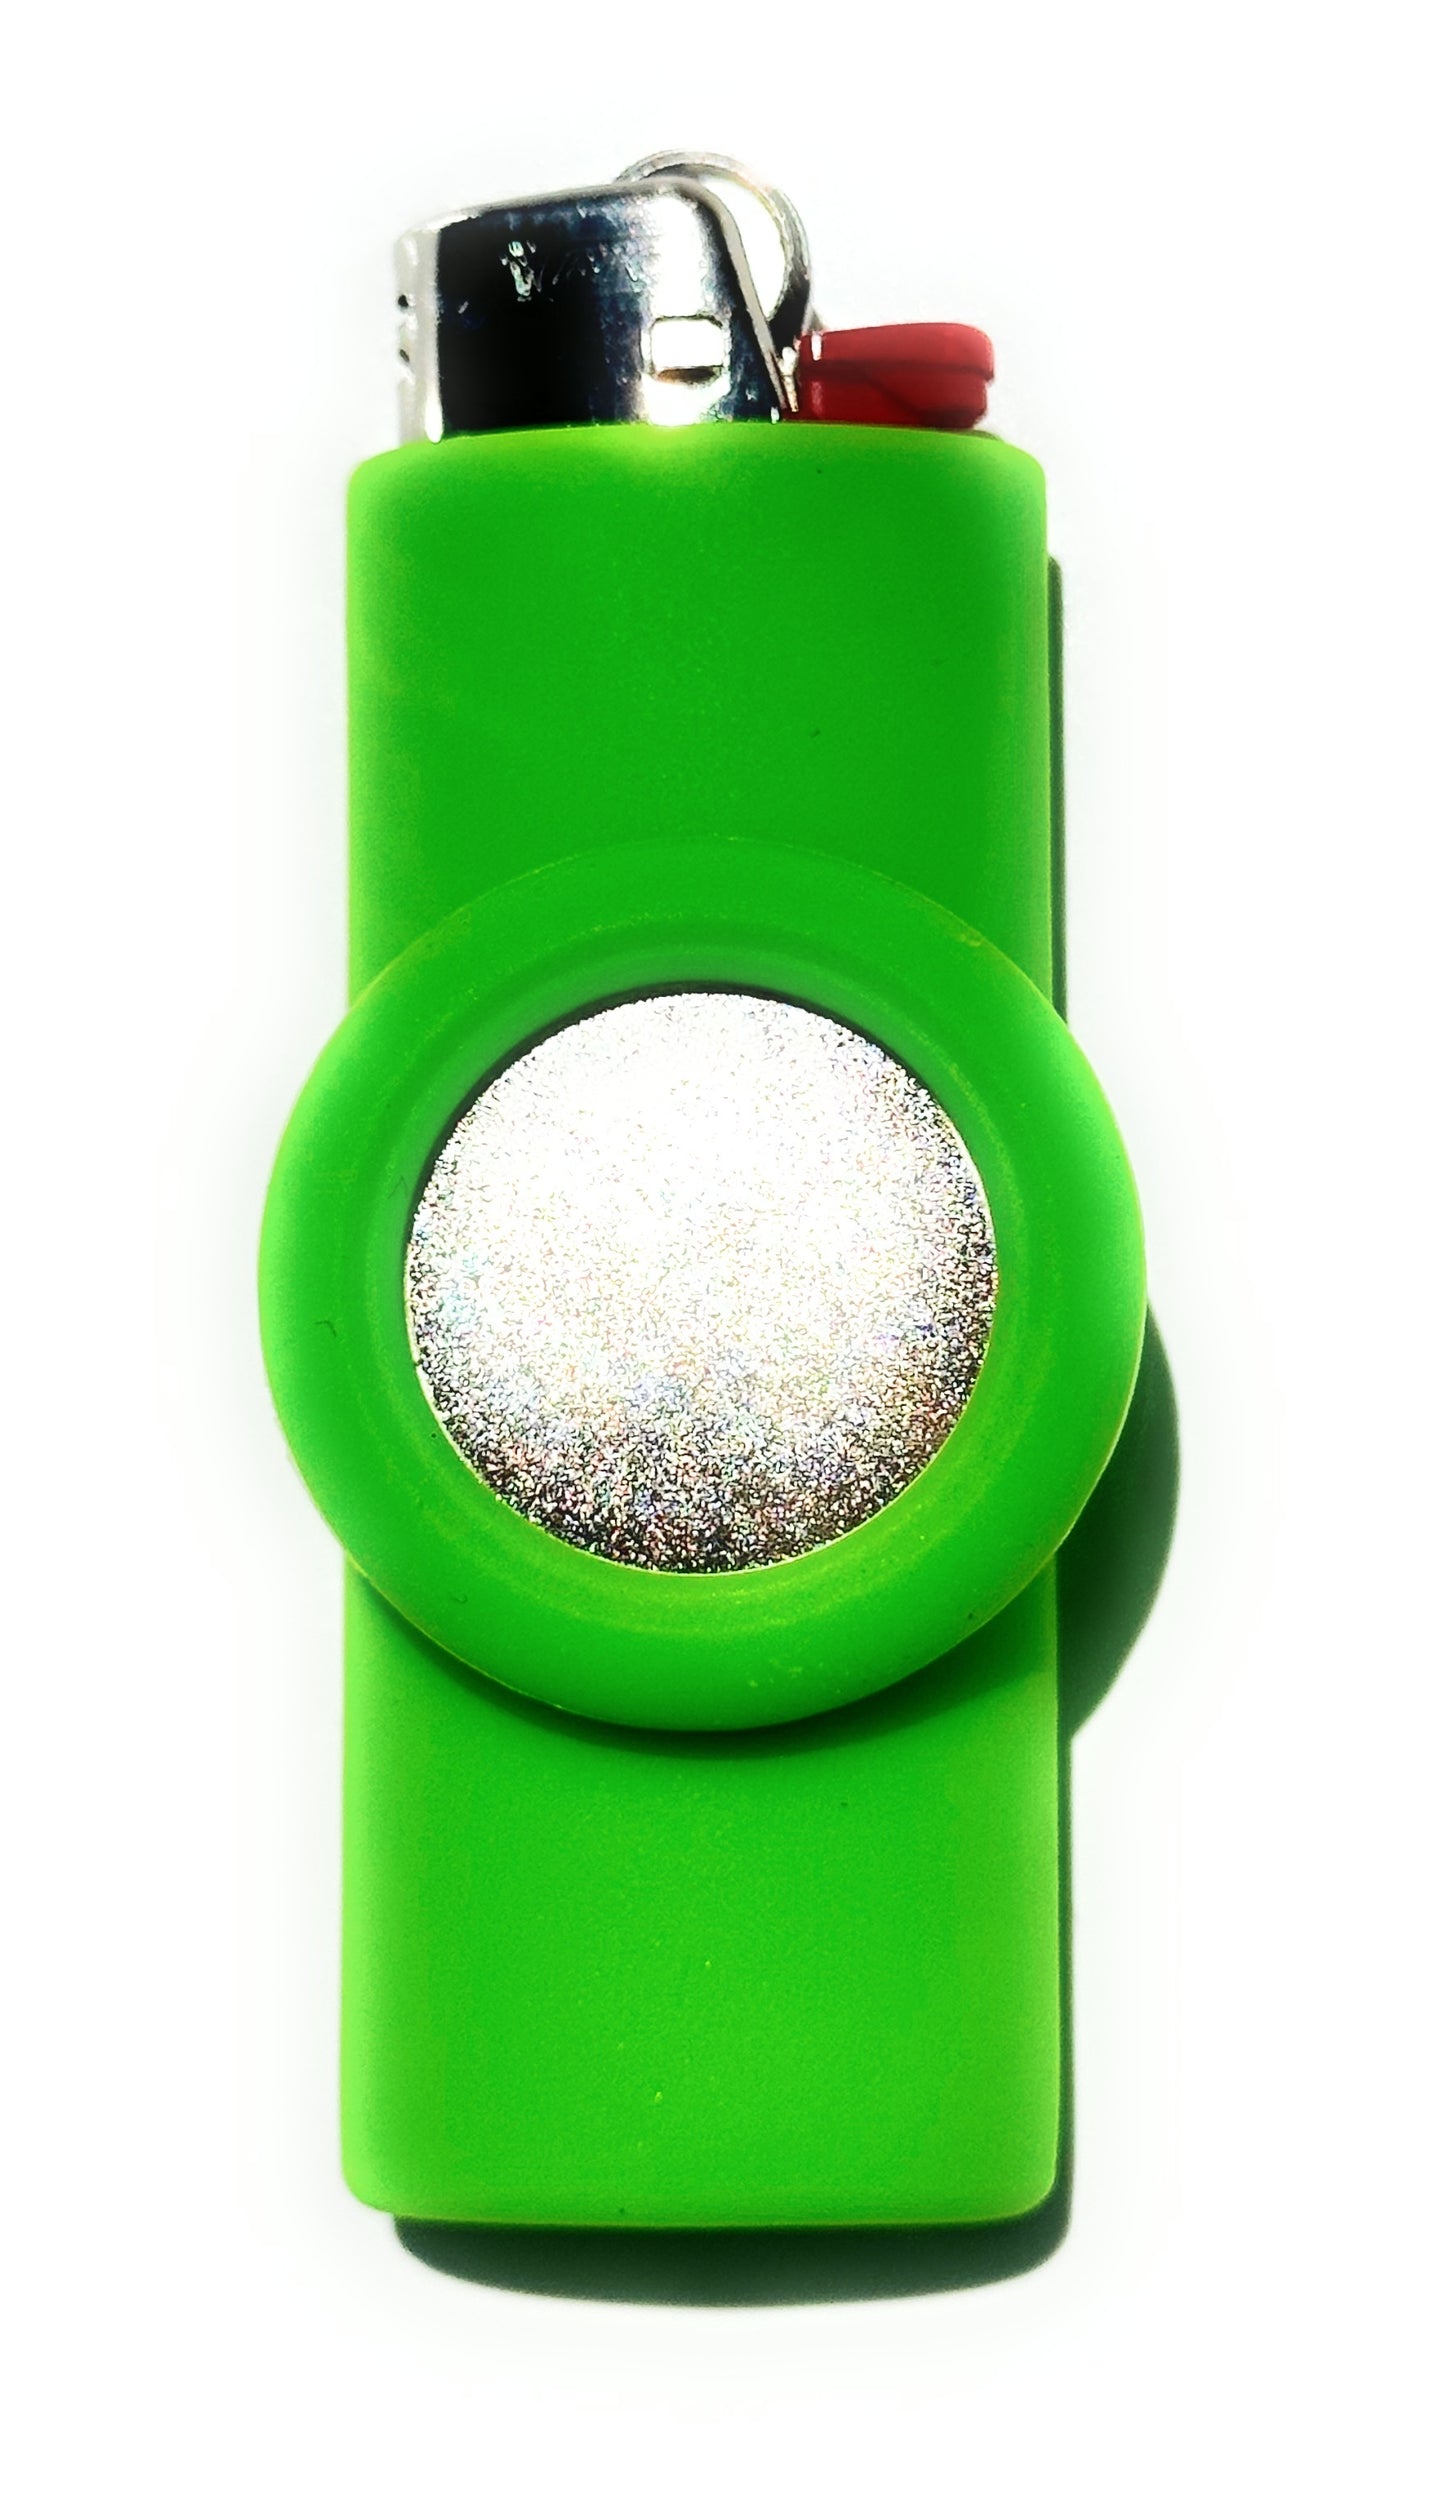 Magnetic Lighter Holder - Includes Magnet - Lighter Not Included